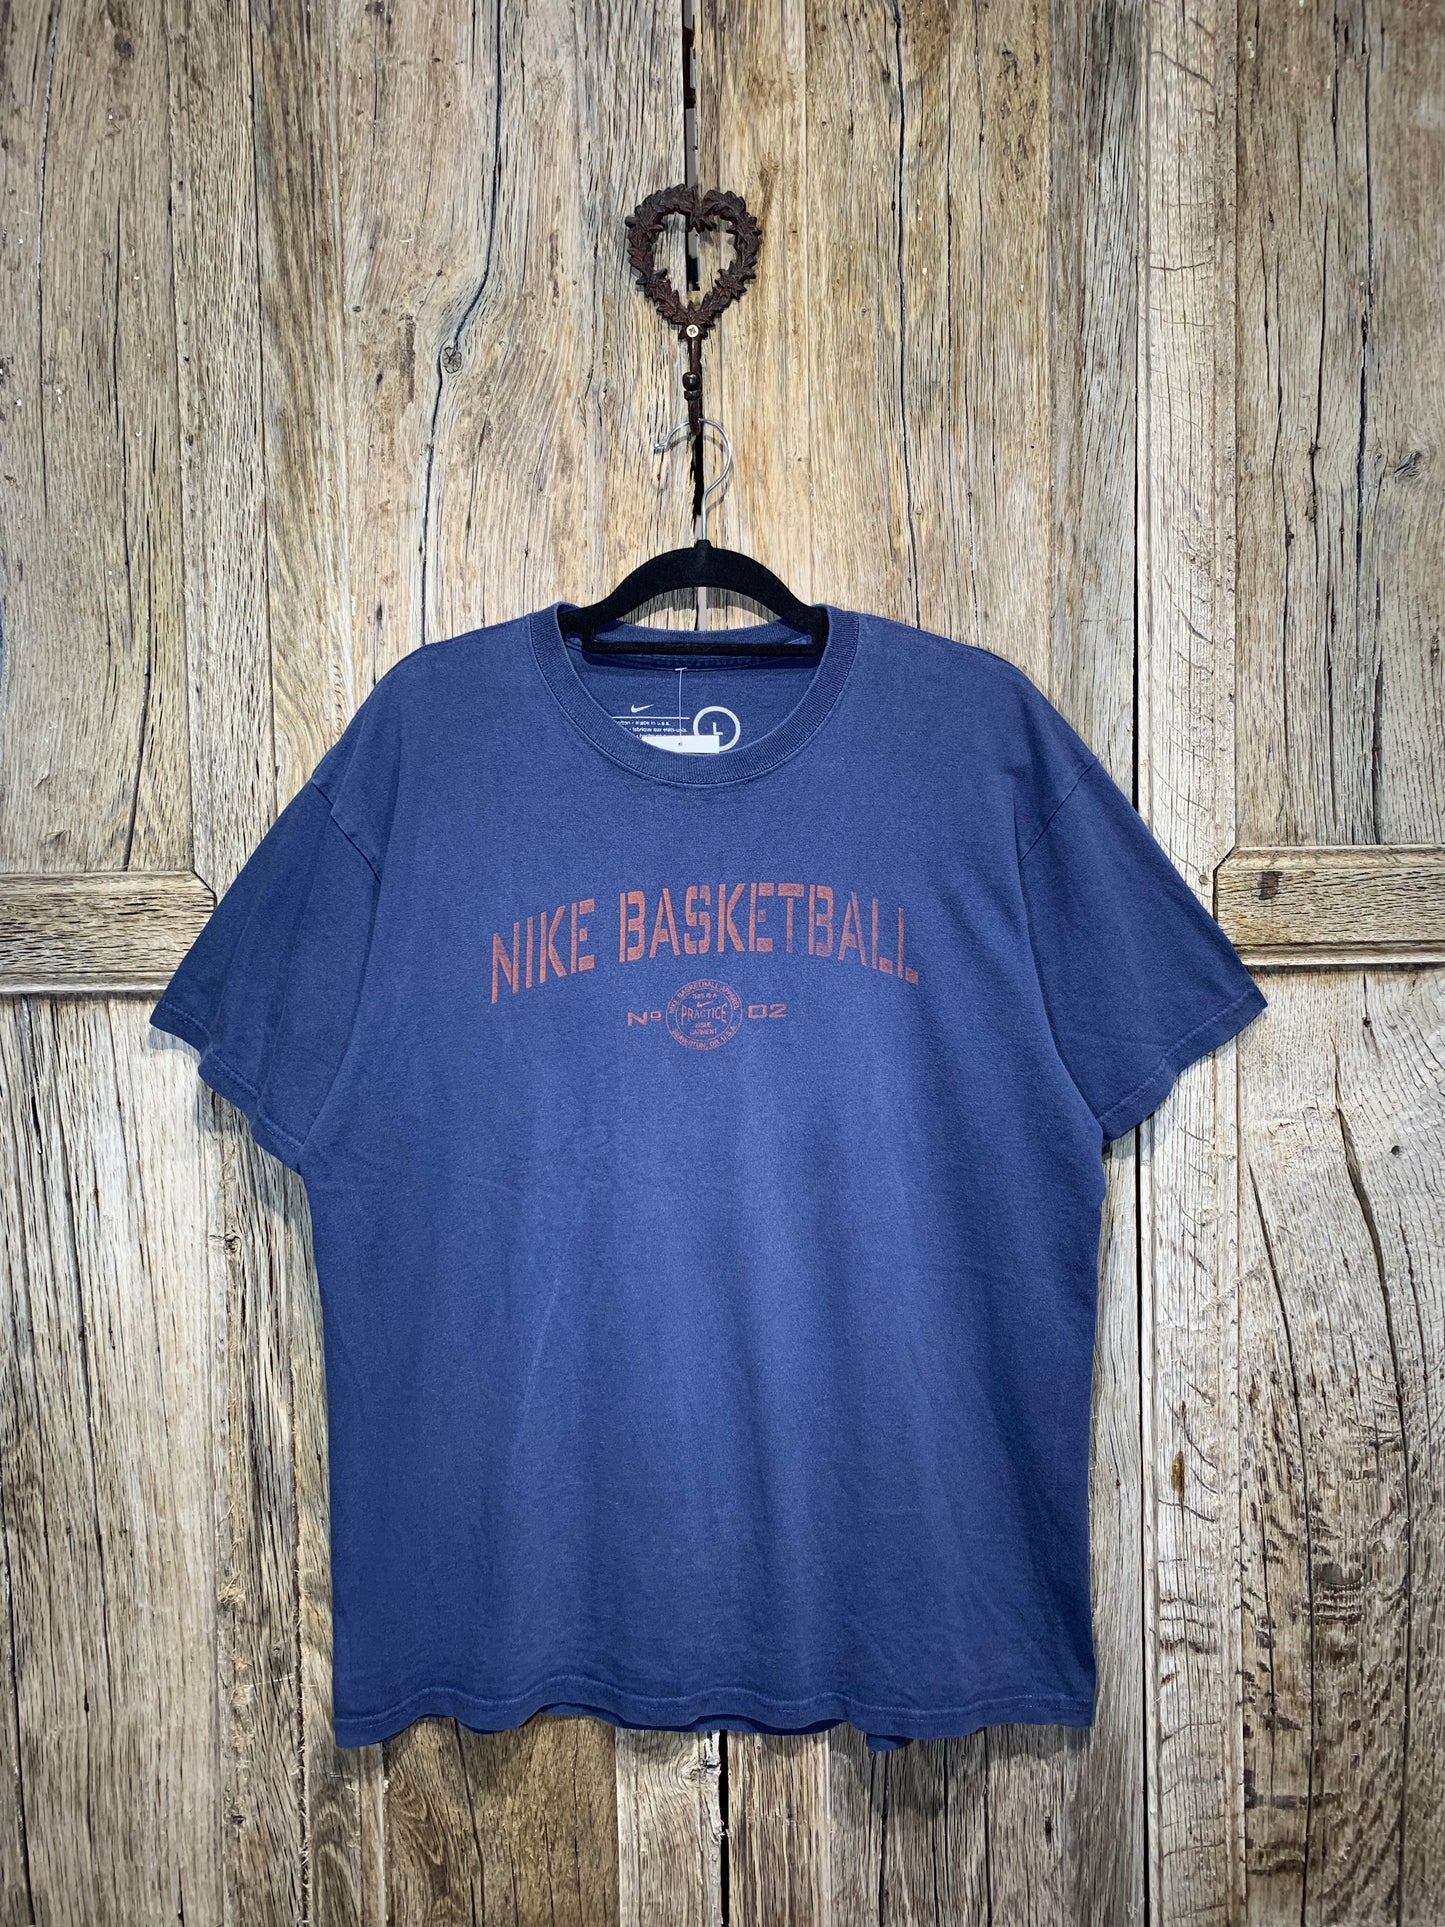 Vintage Blue Nike Basketball Tee